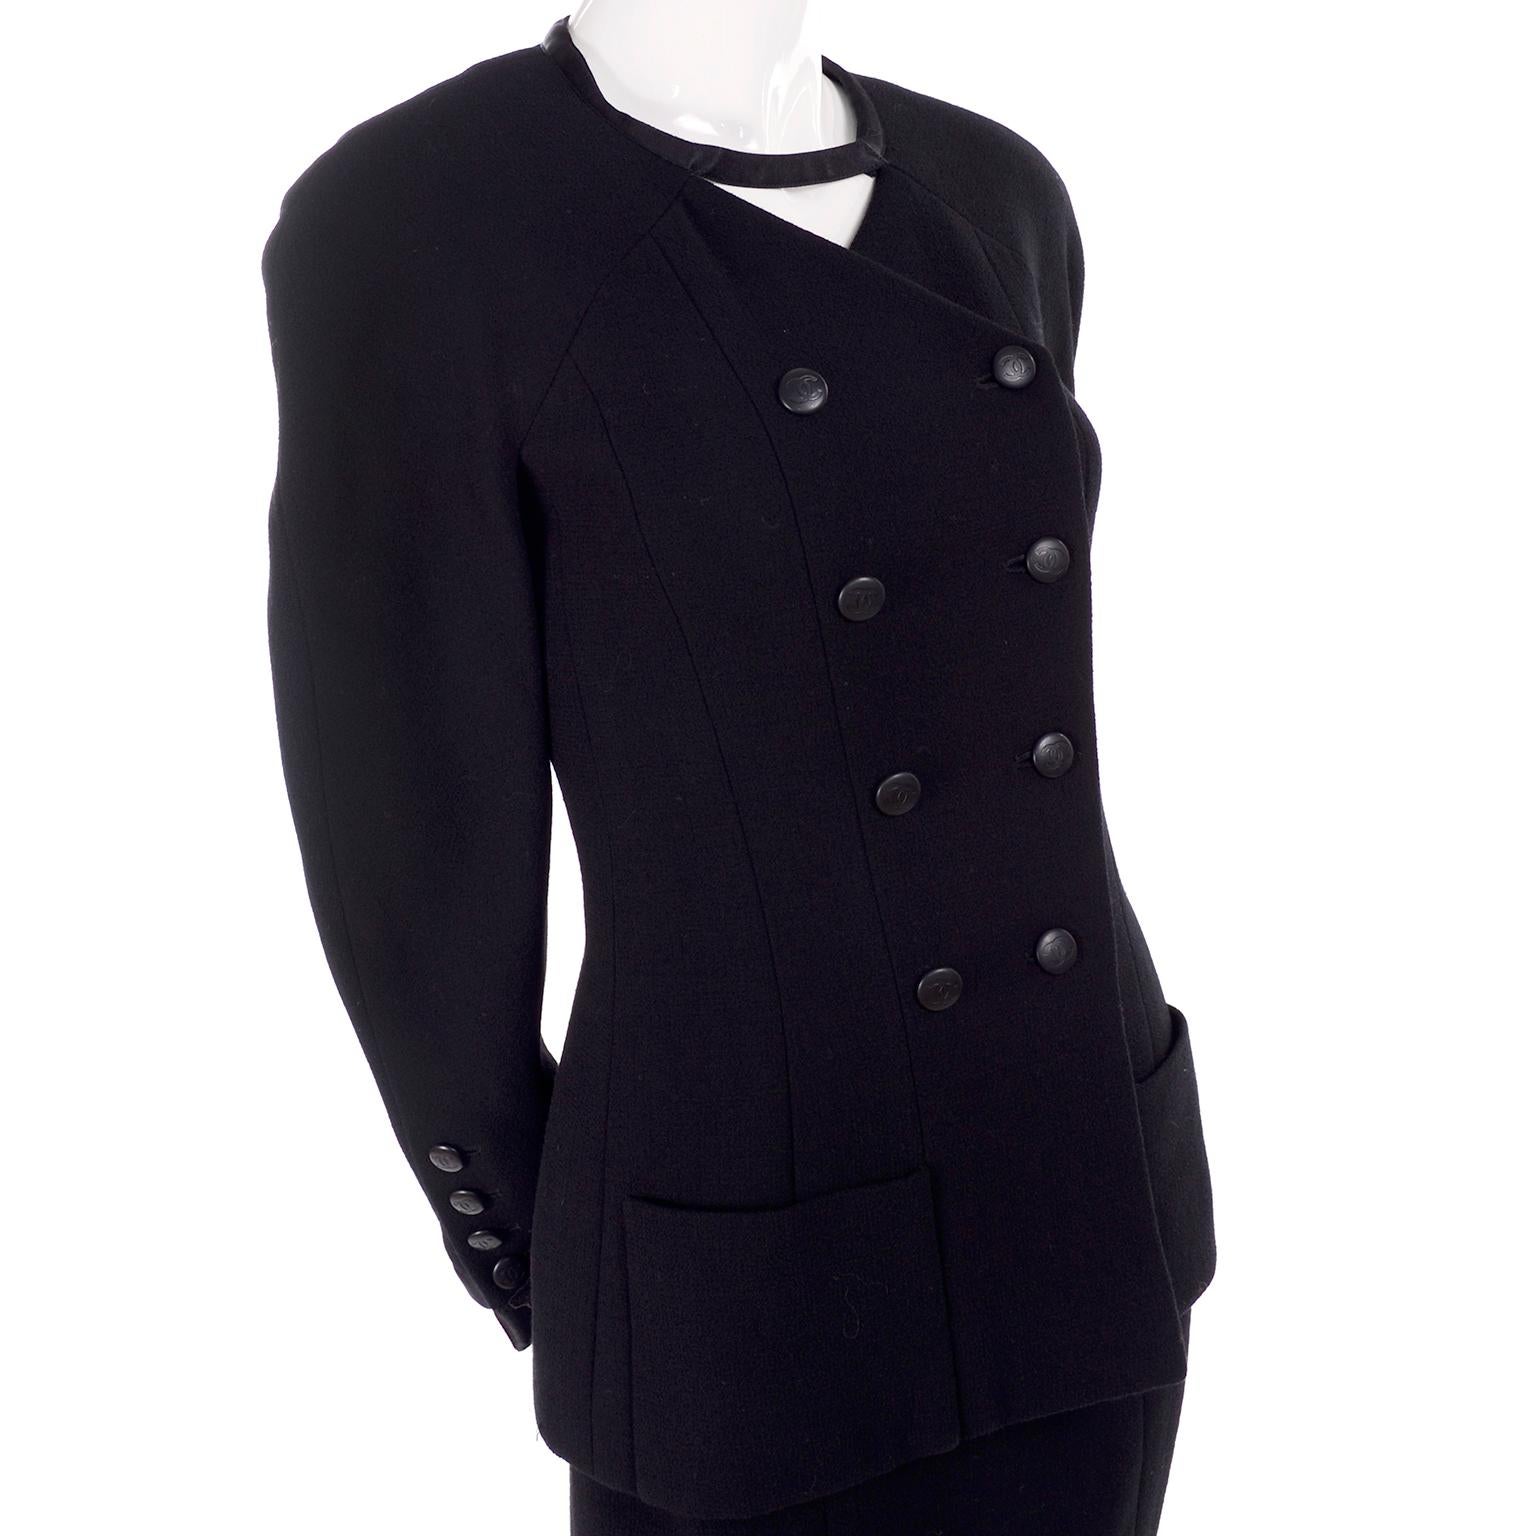 Magnifique tailleur vintage en laine noire Chanel conçu par Karl Lagerfeld pour la collection Cruise / Resort 1996. La tenue comprend une jupe et une veste à double boutonnage avec une pièce de tissu intéressante qui se croise au niveau de la